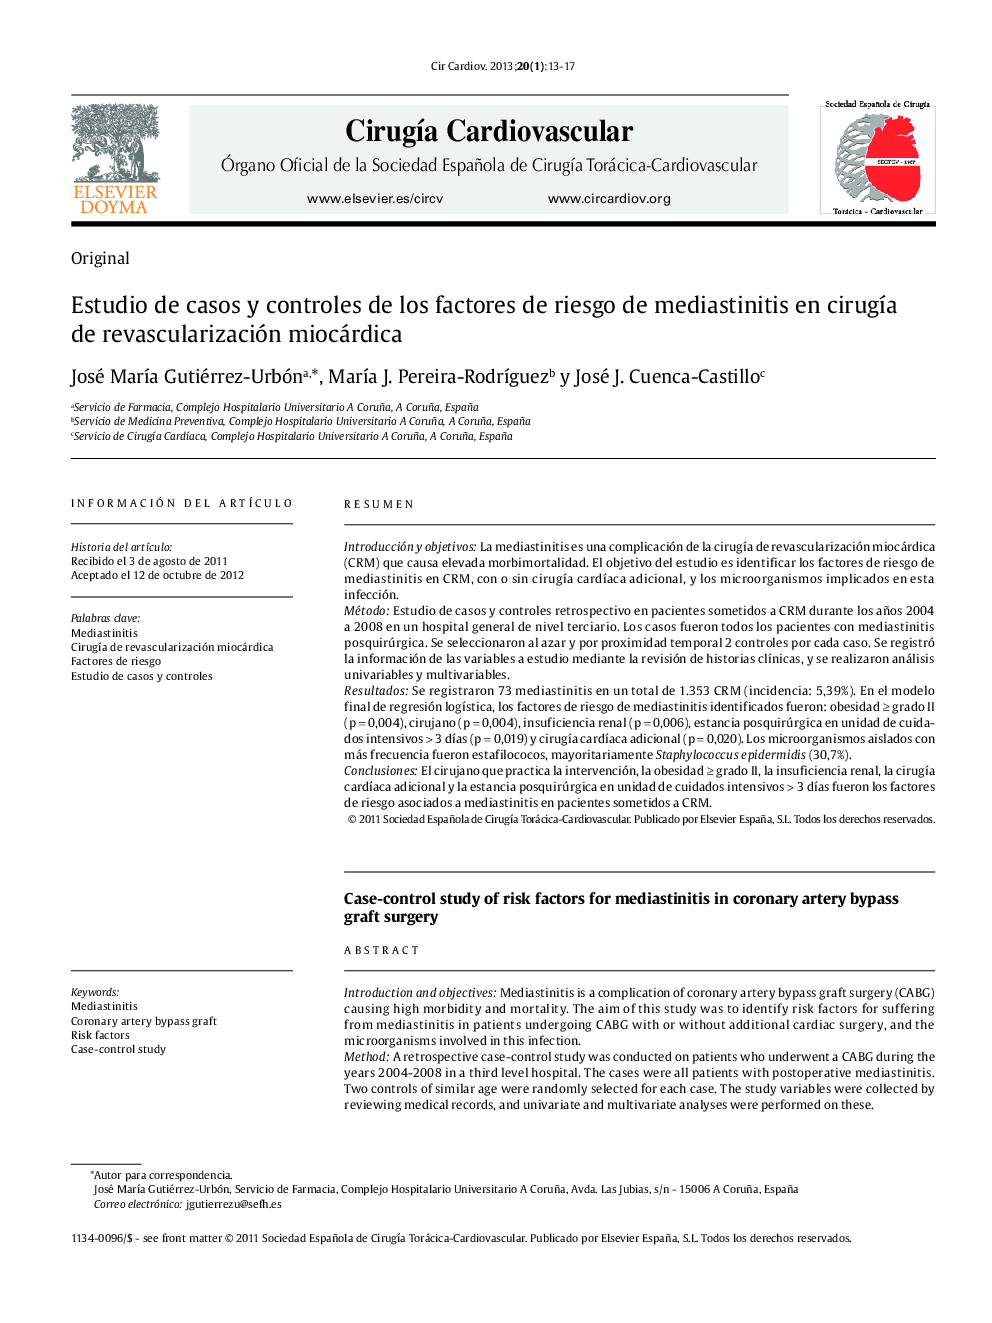 Estudio de casos y controles de los factores de riesgo de mediastinitis en cirugía de revascularización miocárdica